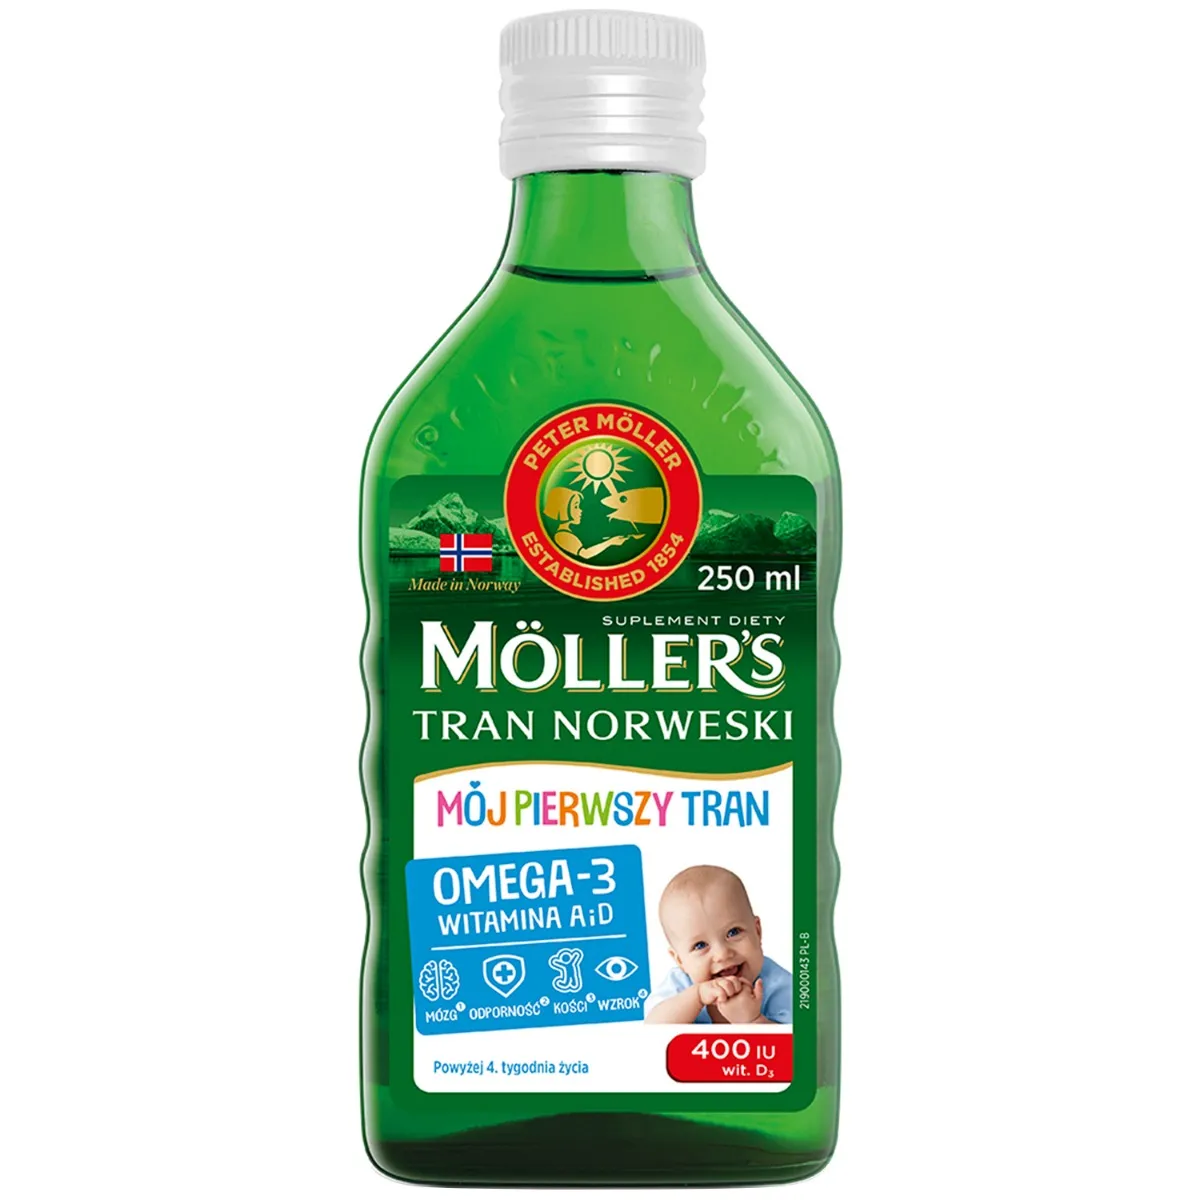 Moller's Mój Pierwszy Tran Norweski, suplement diety, 250 ml